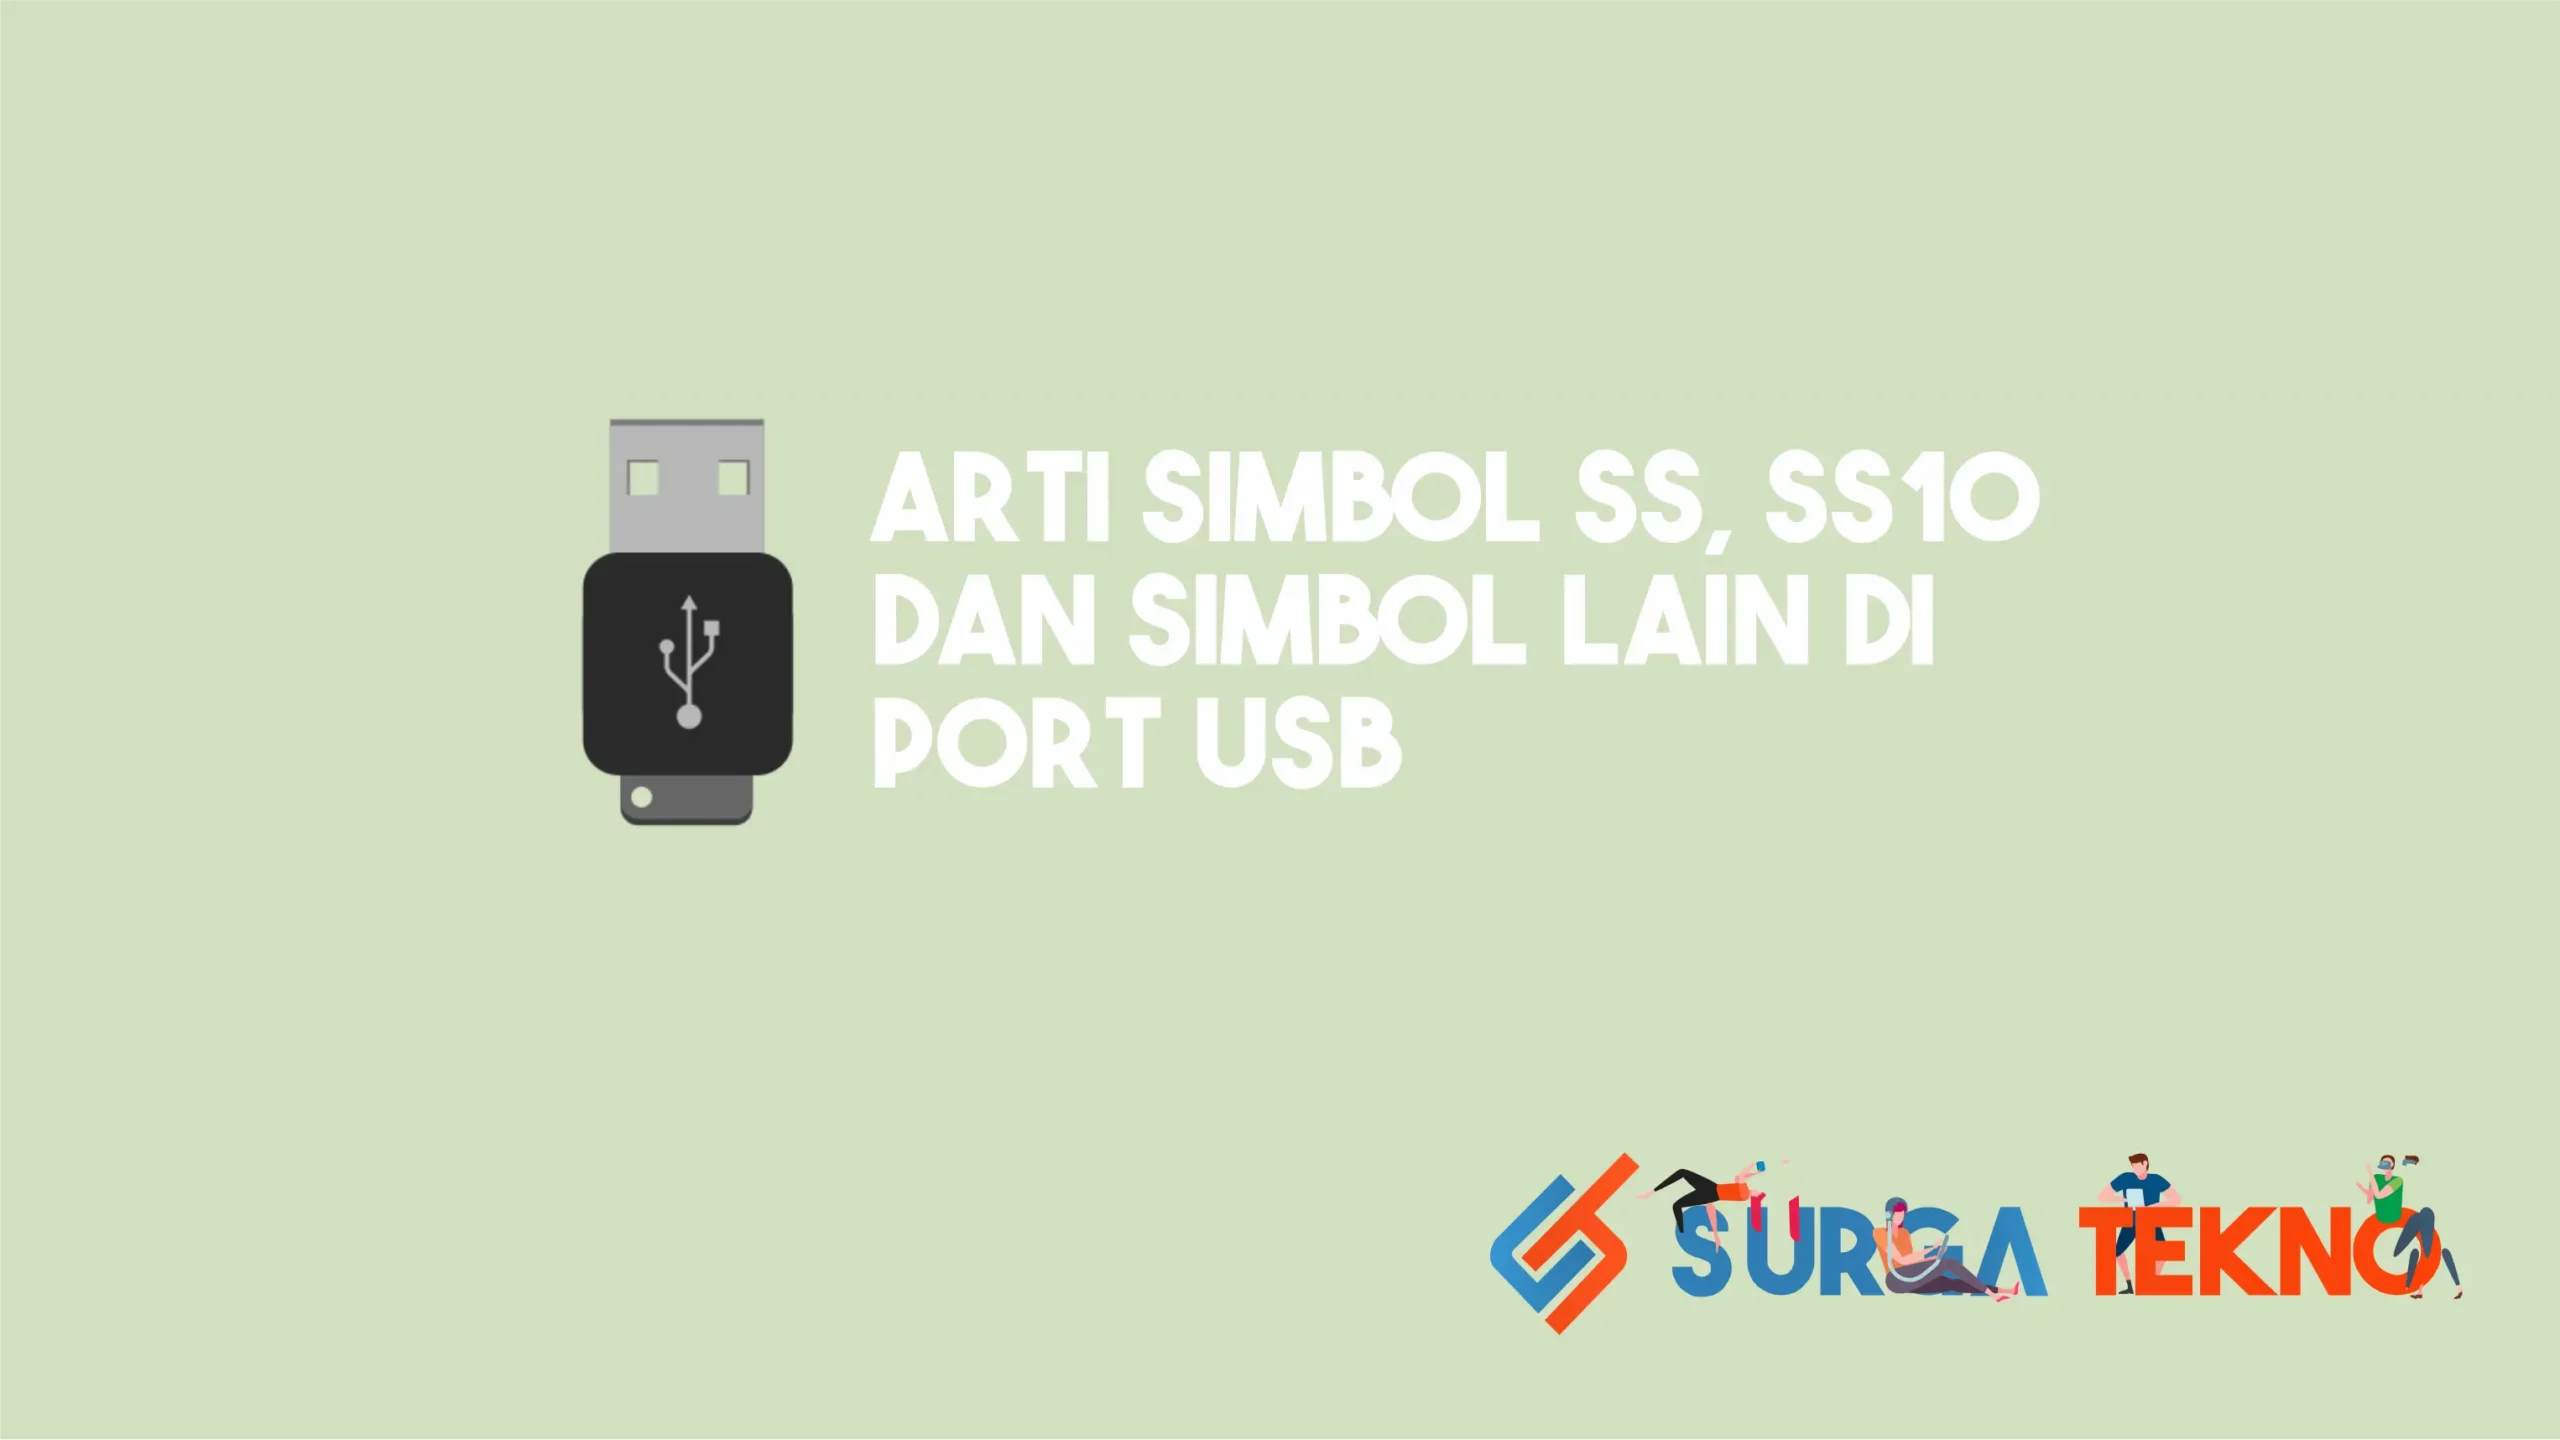 Arti Simbol SS, SS 10 dan Simbol Lain di Port USB